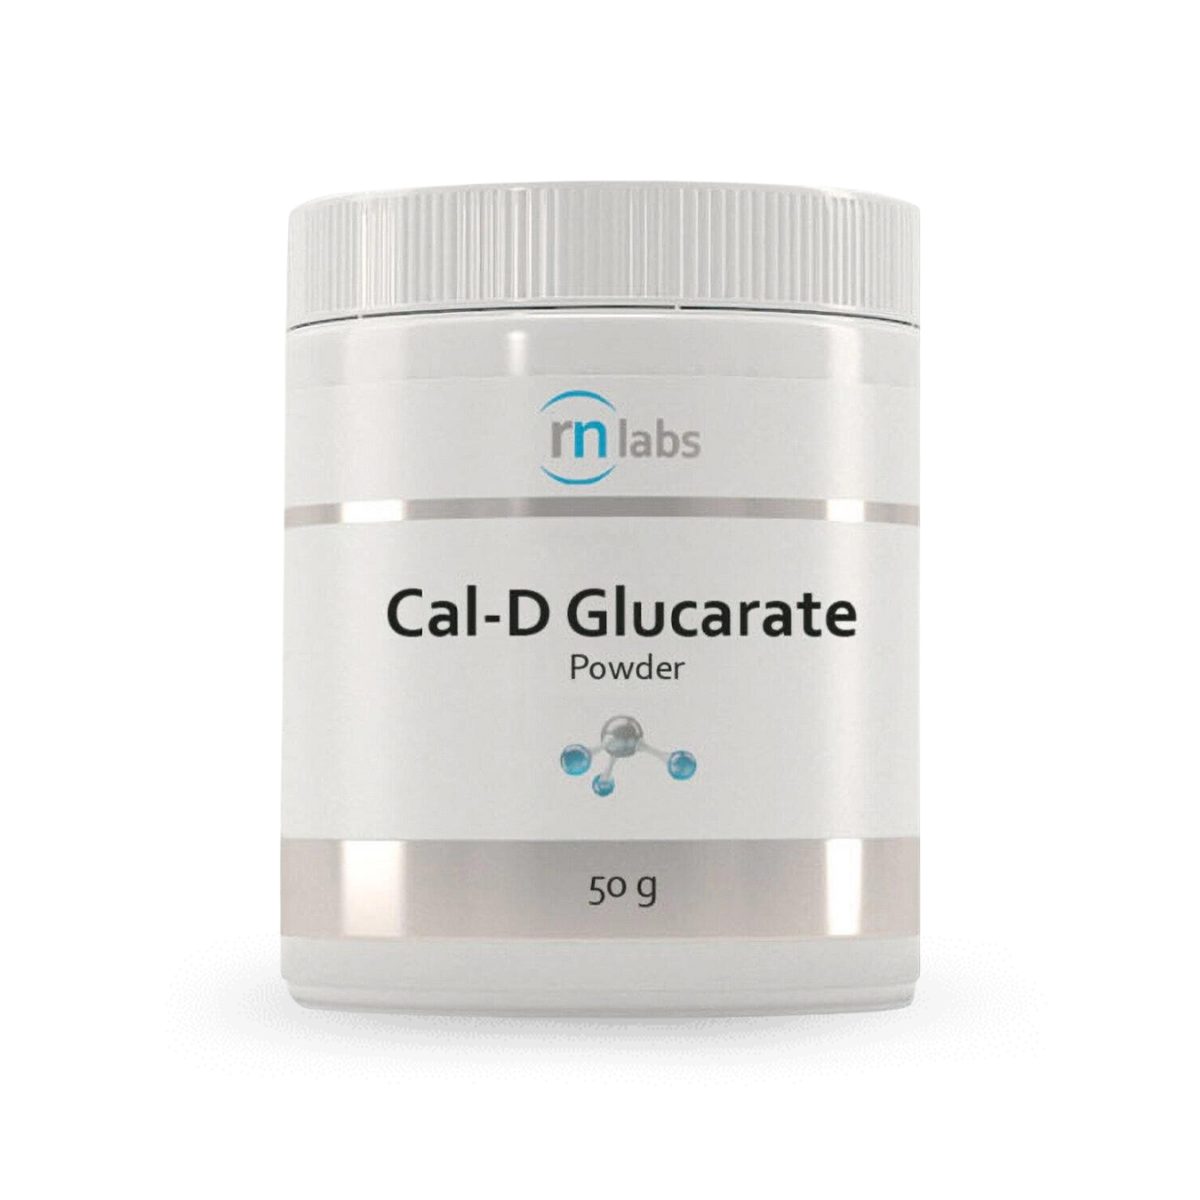 RN Labs Cal-D Glucarate Powder 50g